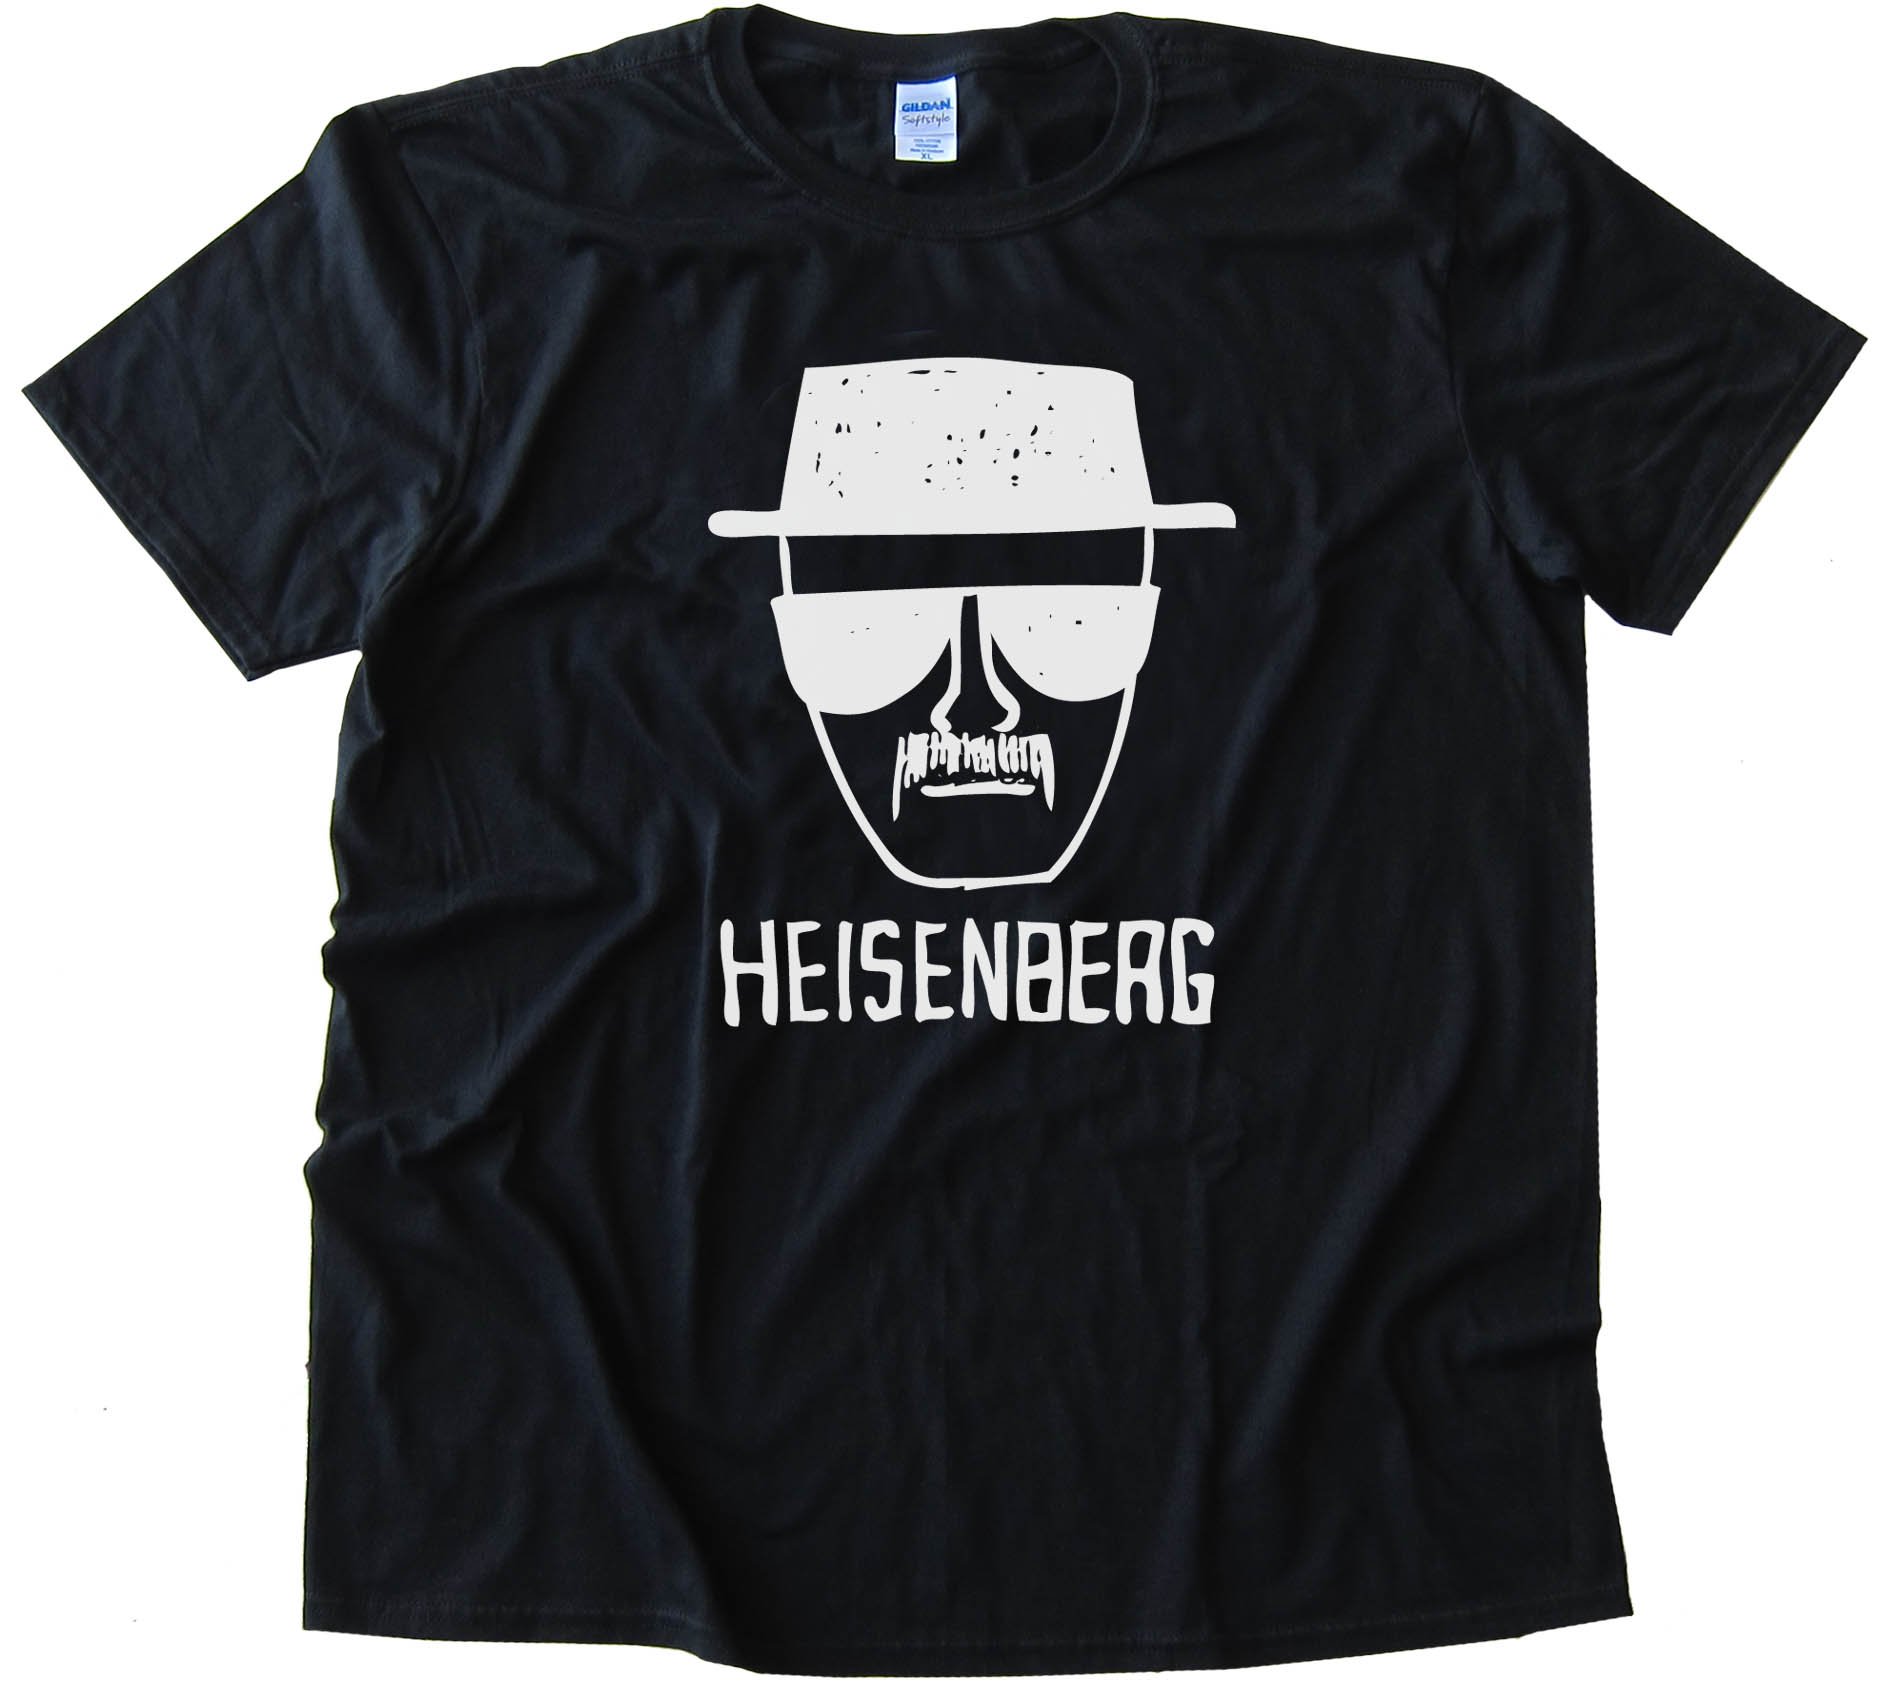 Breaking Bad Heisenberg Drawing - Tee Shirt